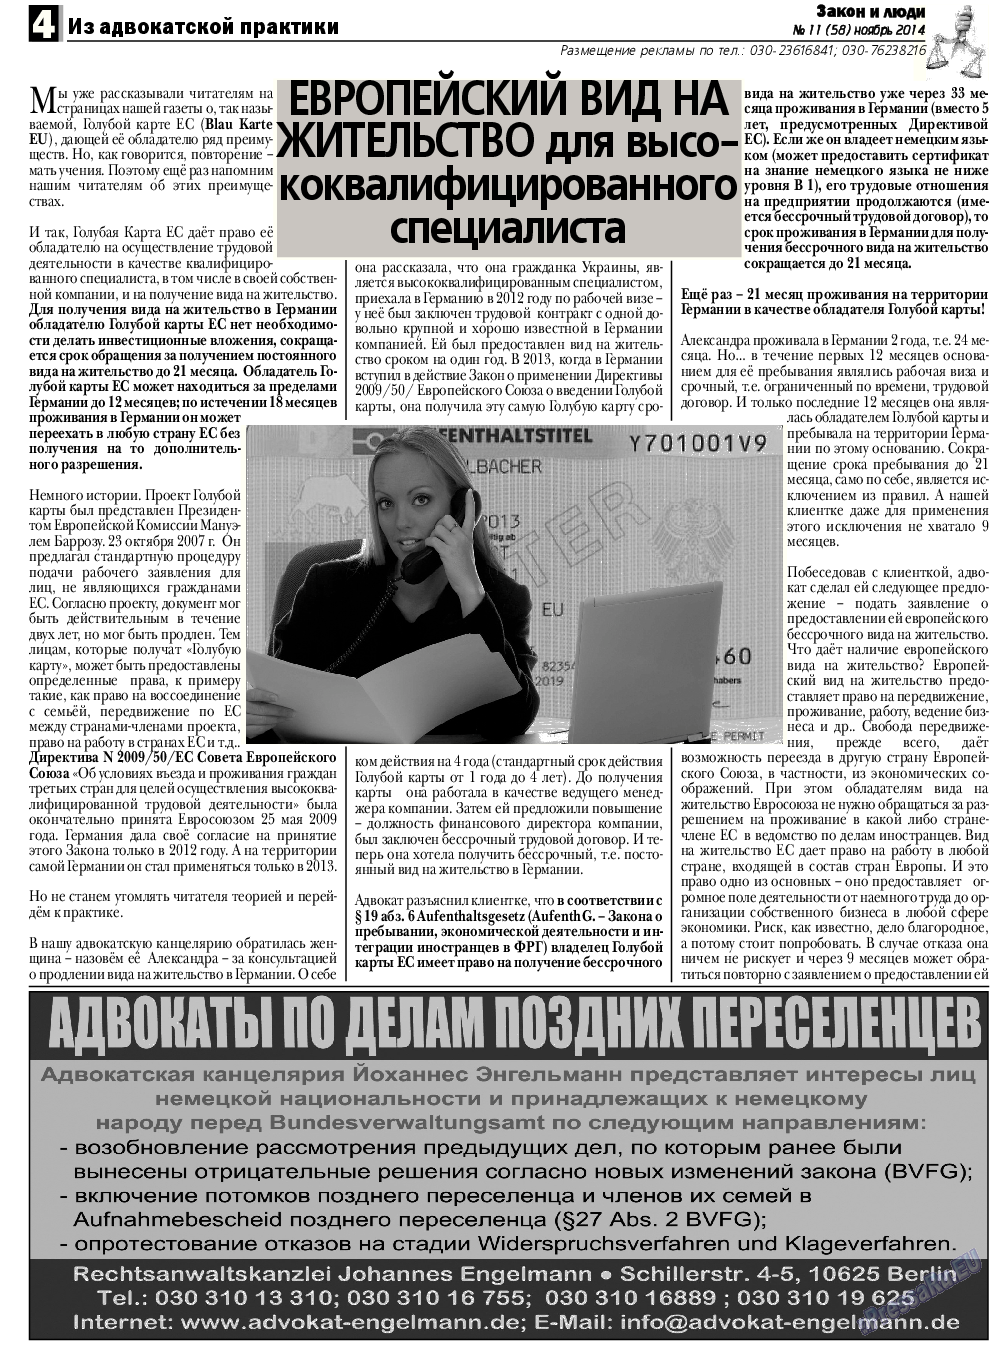 Закон и люди, газета. 2014 №11 стр.4